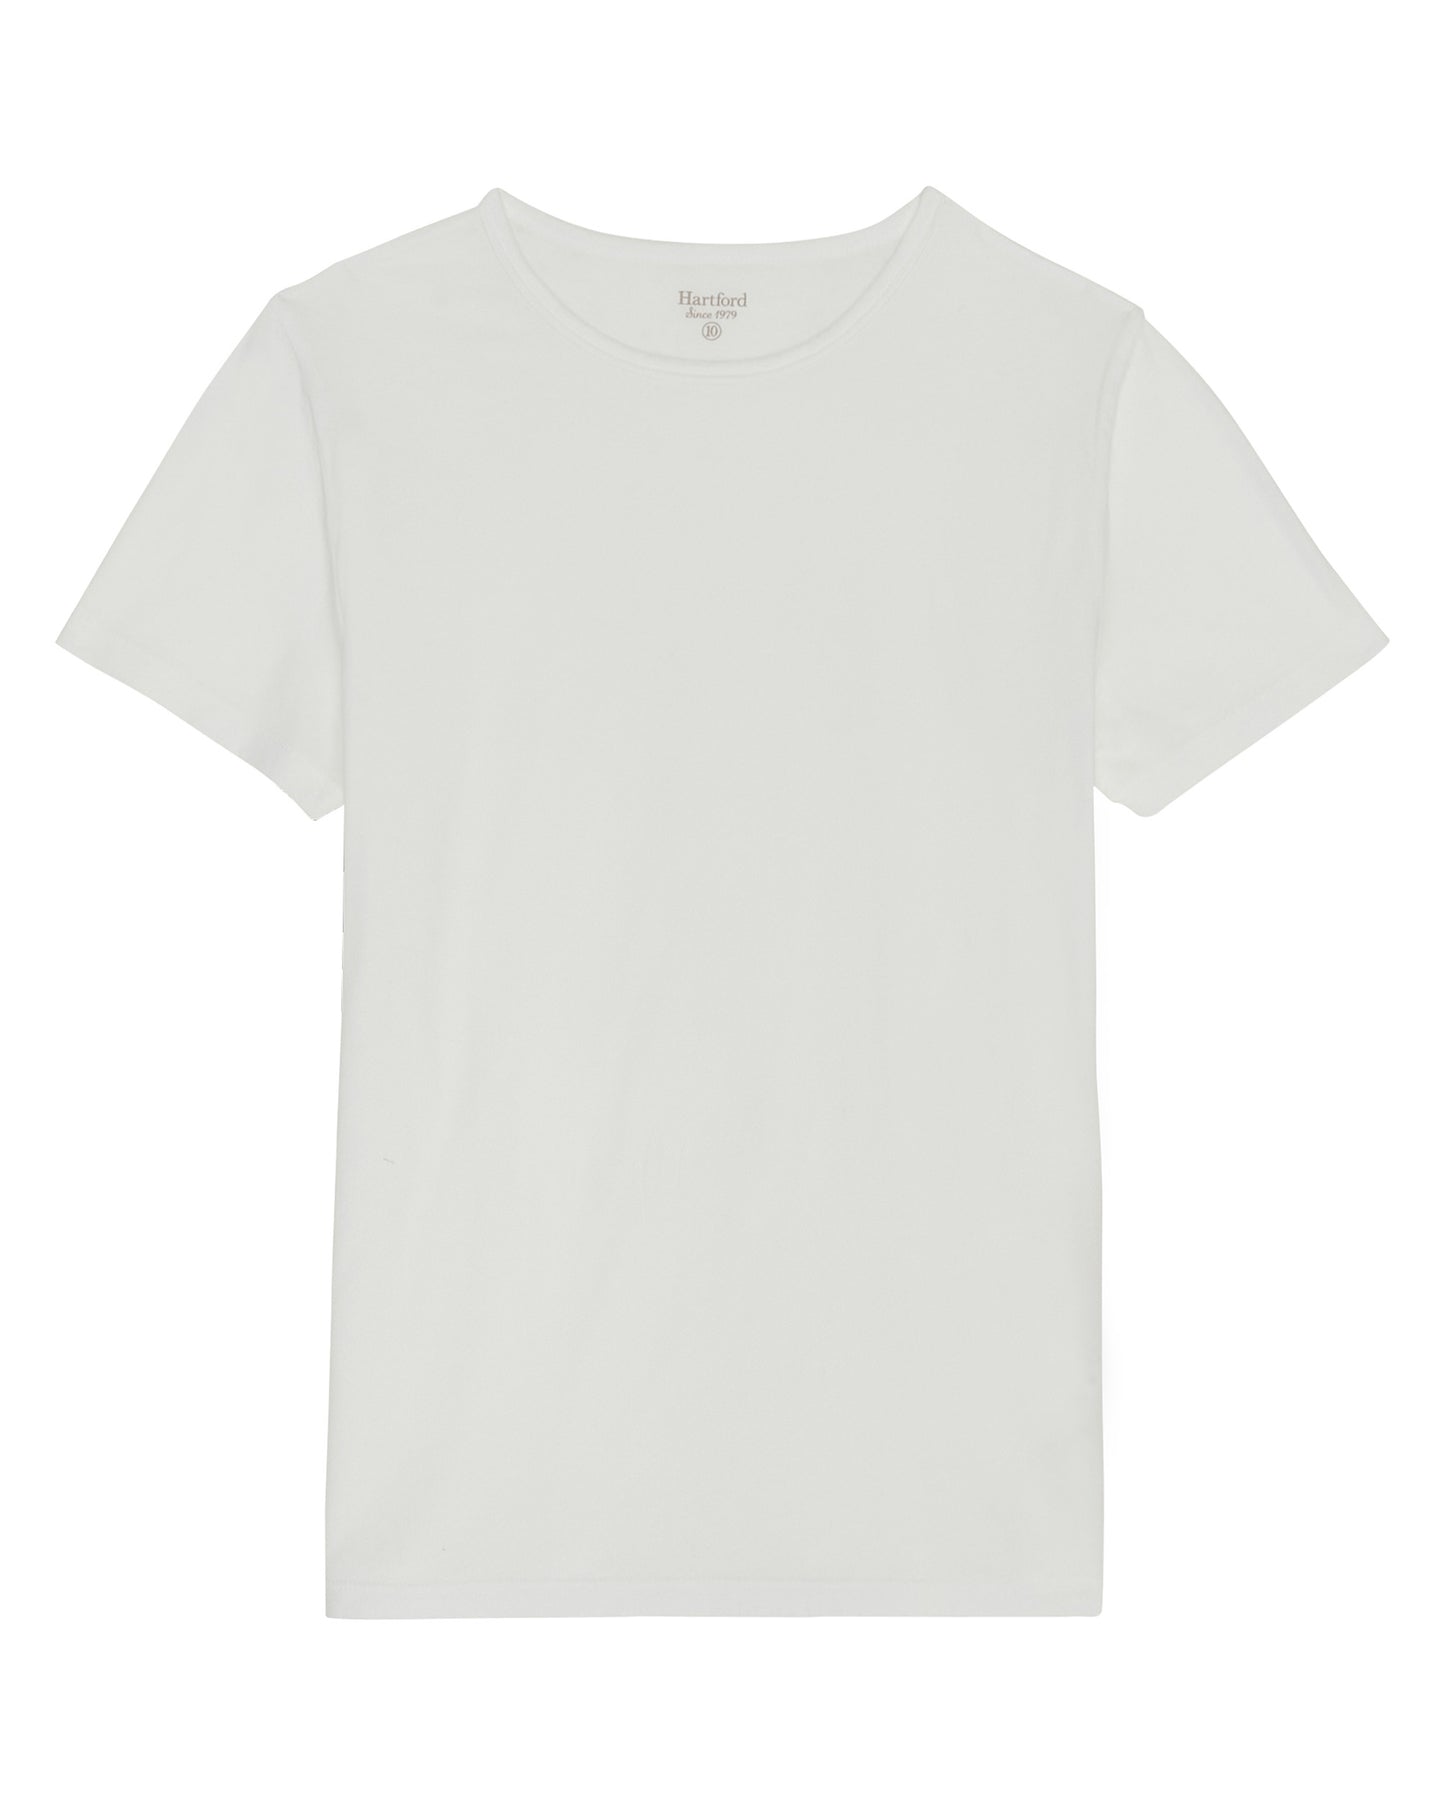 Boy's White Light Jersey T-Shirt